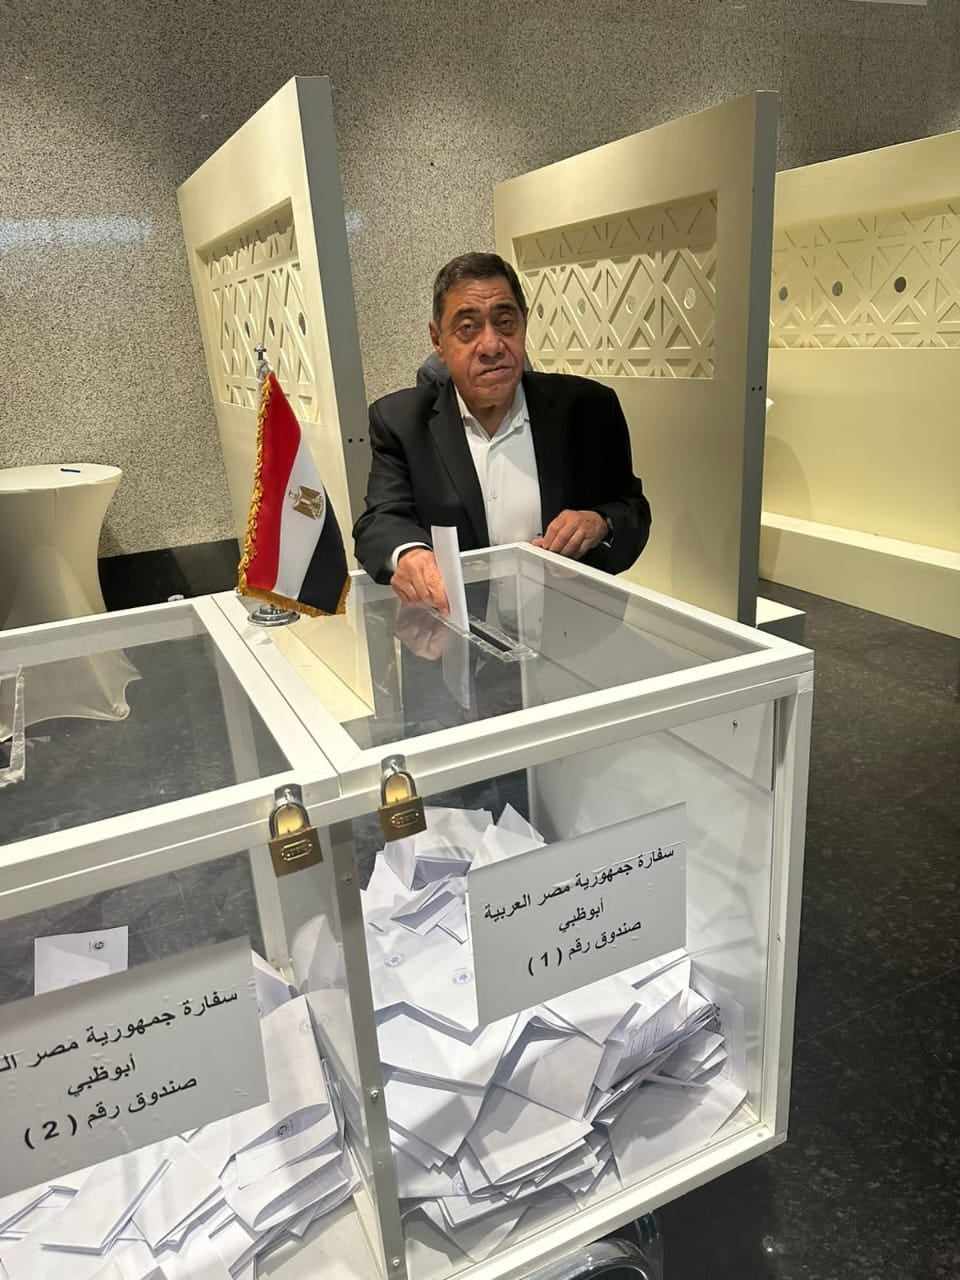 المستشار عبد المجيد محمود يدلي بصوته في الانتخابات الرئاسية.. ويحض المصريين على المشاركة

